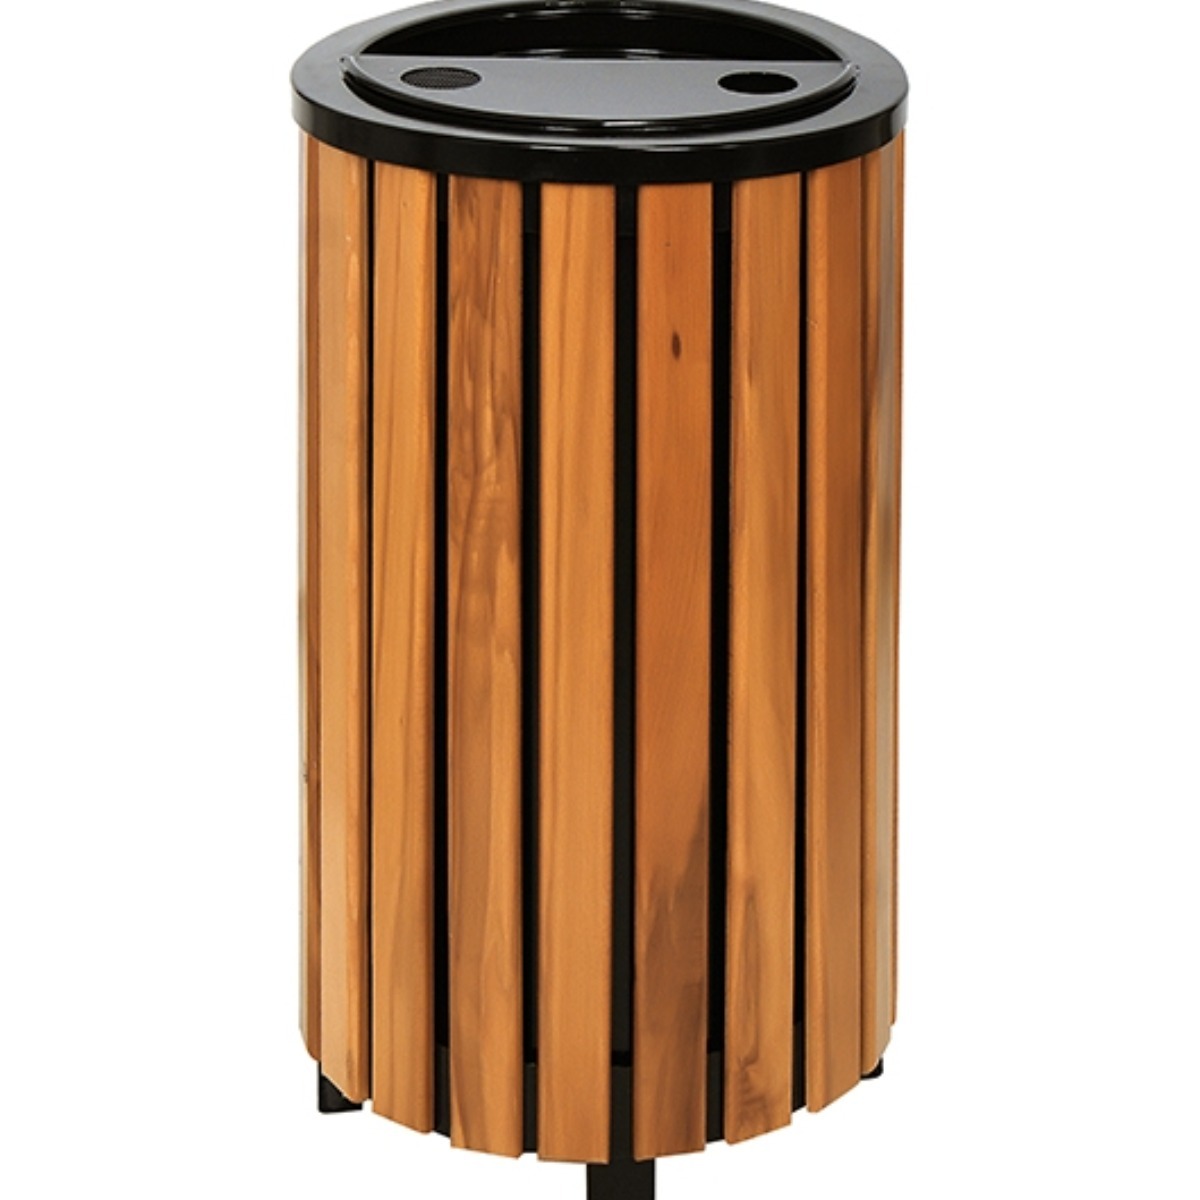 AB-510 Wood Open Space Trash Can adlı ürünün logosu